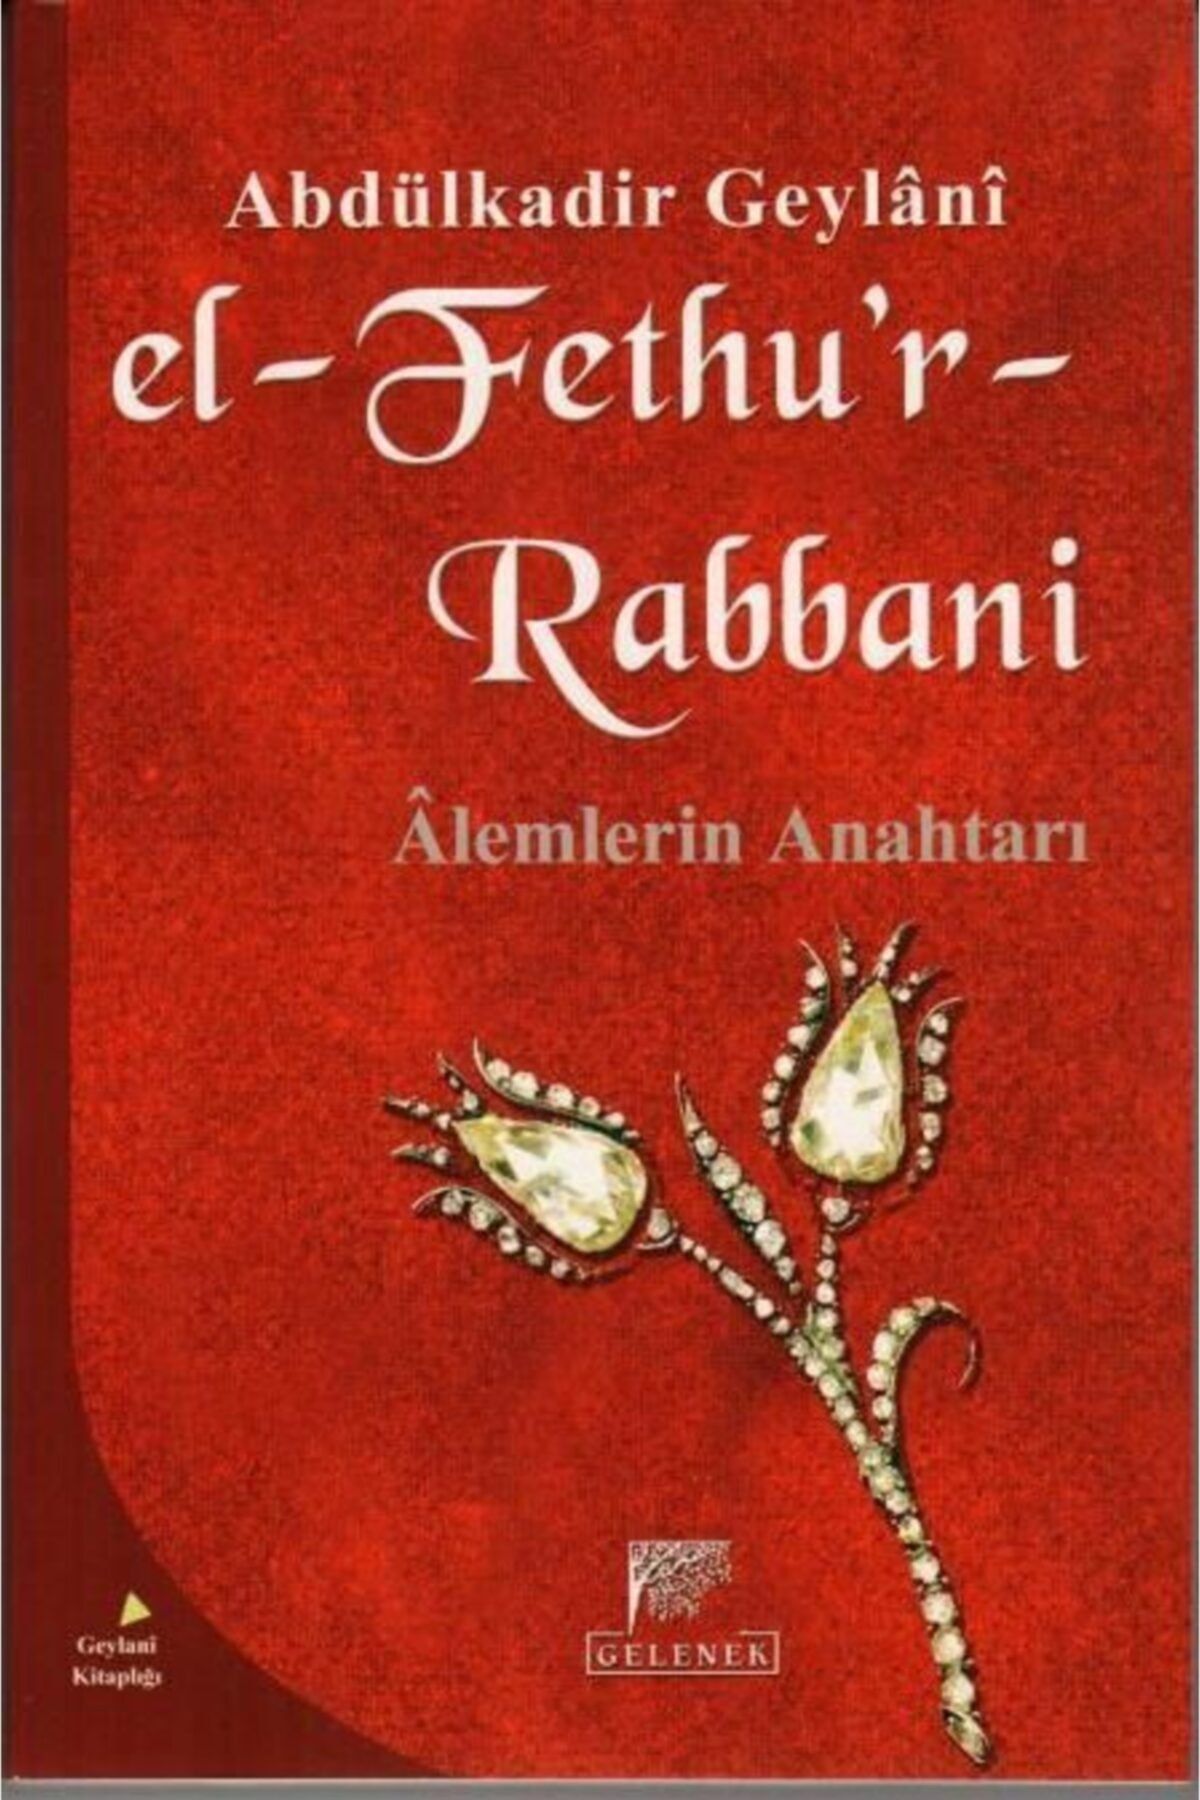 Gelenek Yayıncılık El-fethur Rabbani Alemlerin Anahtarı Abdulkadir Geylani Sohbetler, Karton Kapak, Gelenek